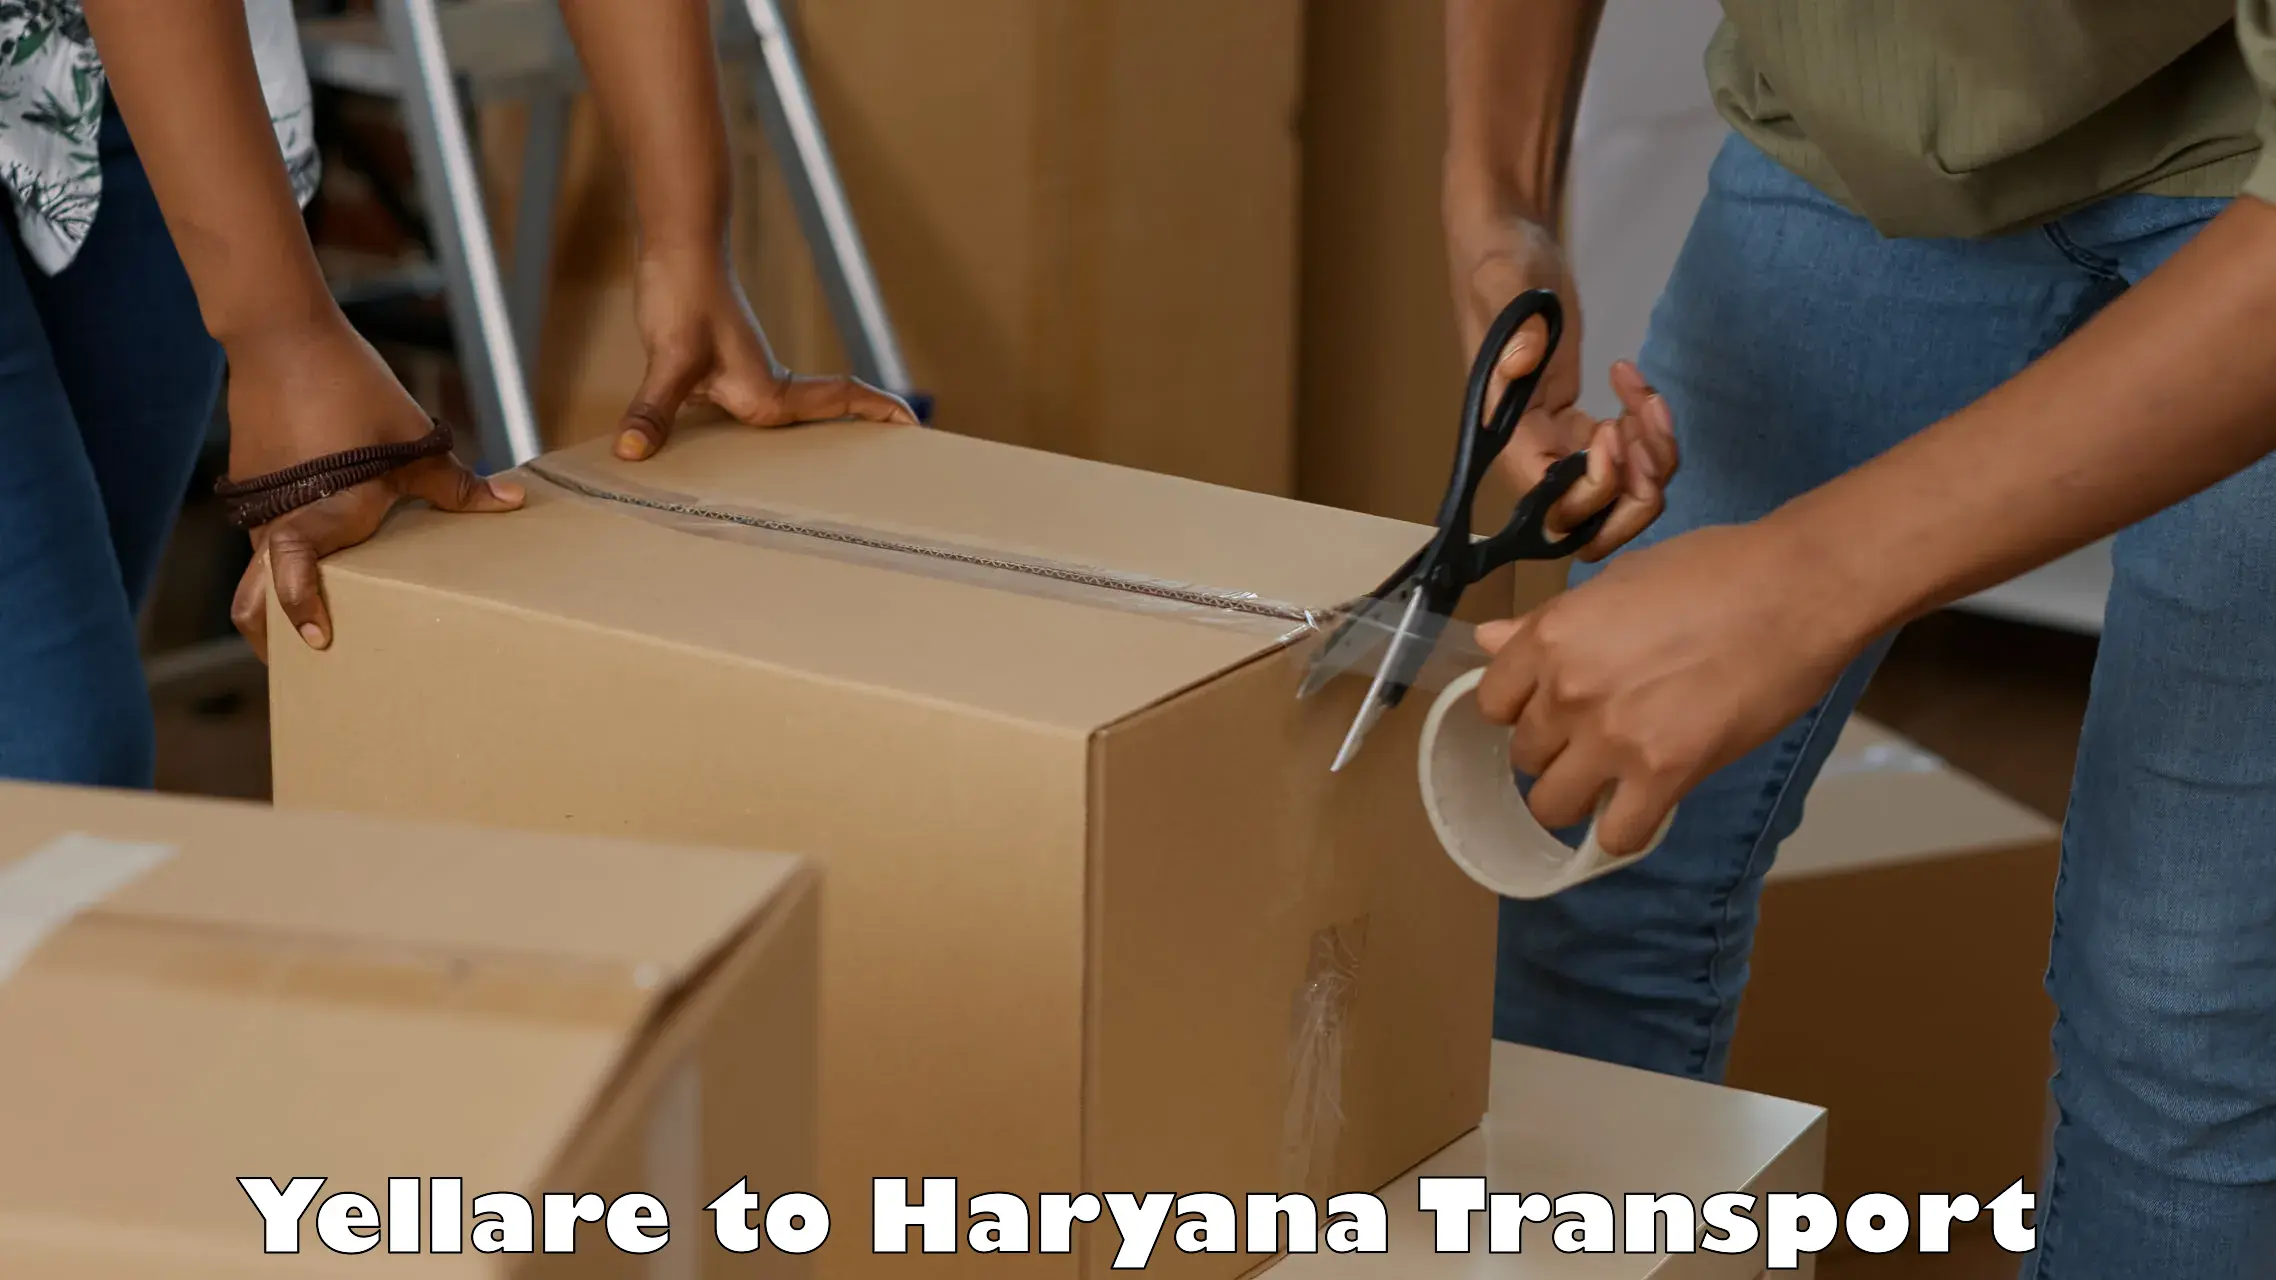 Door to door transport services Yellare to Haryana